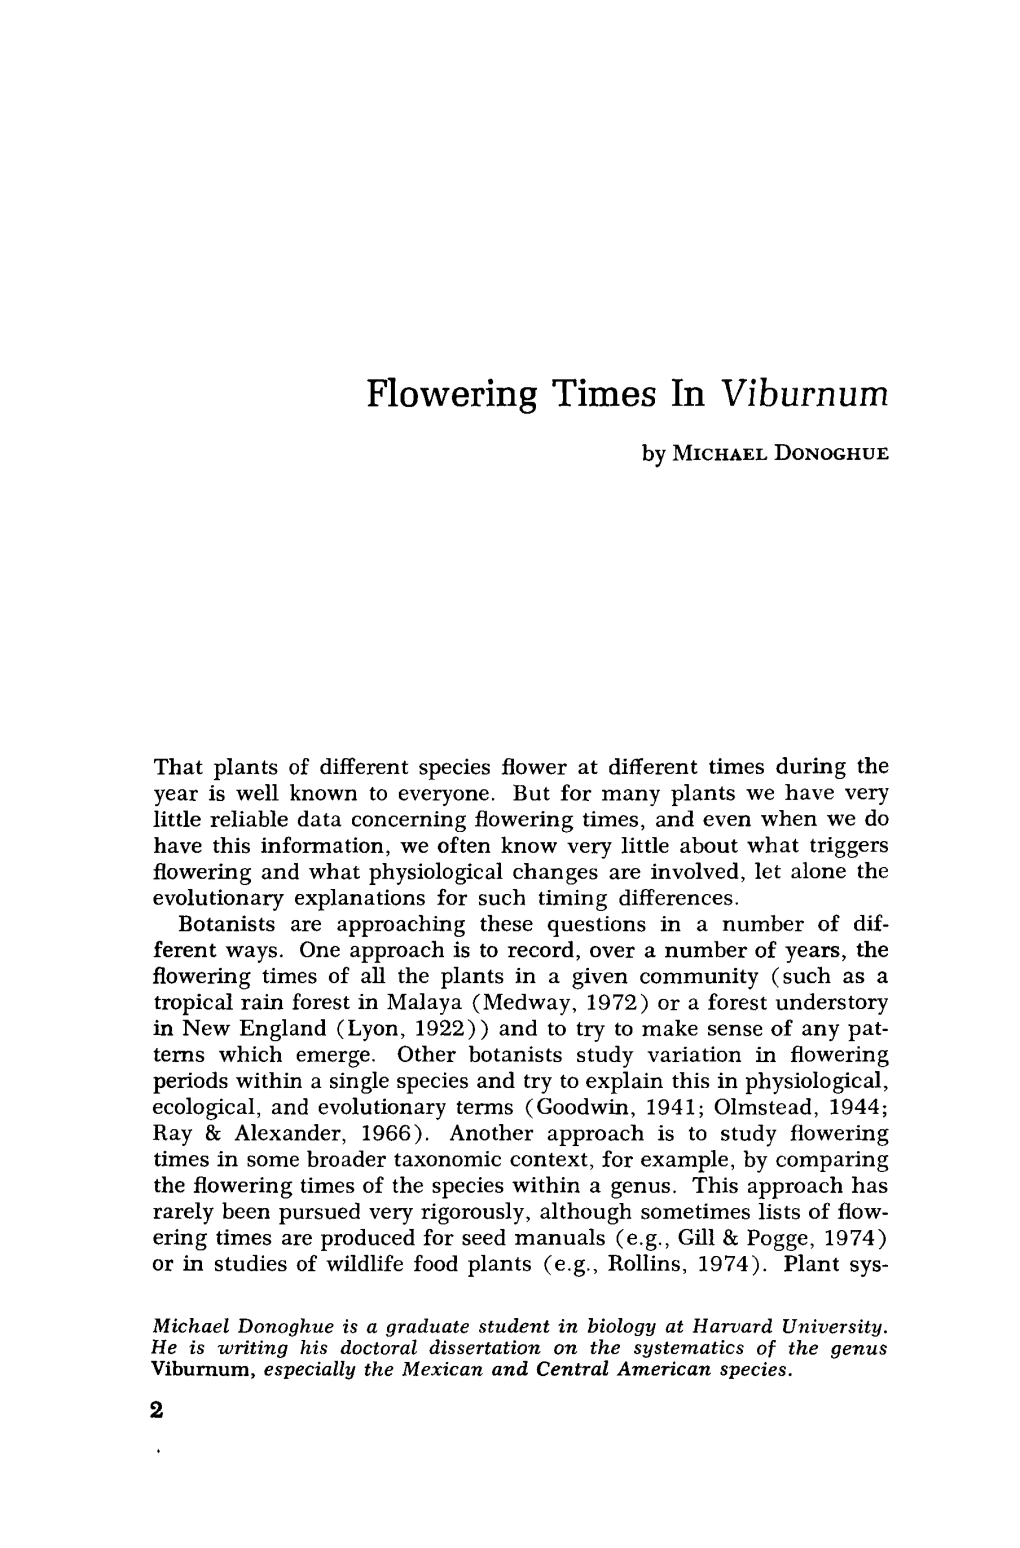 Flowering Times in Viburnum by MICHAEL DONOGHUE